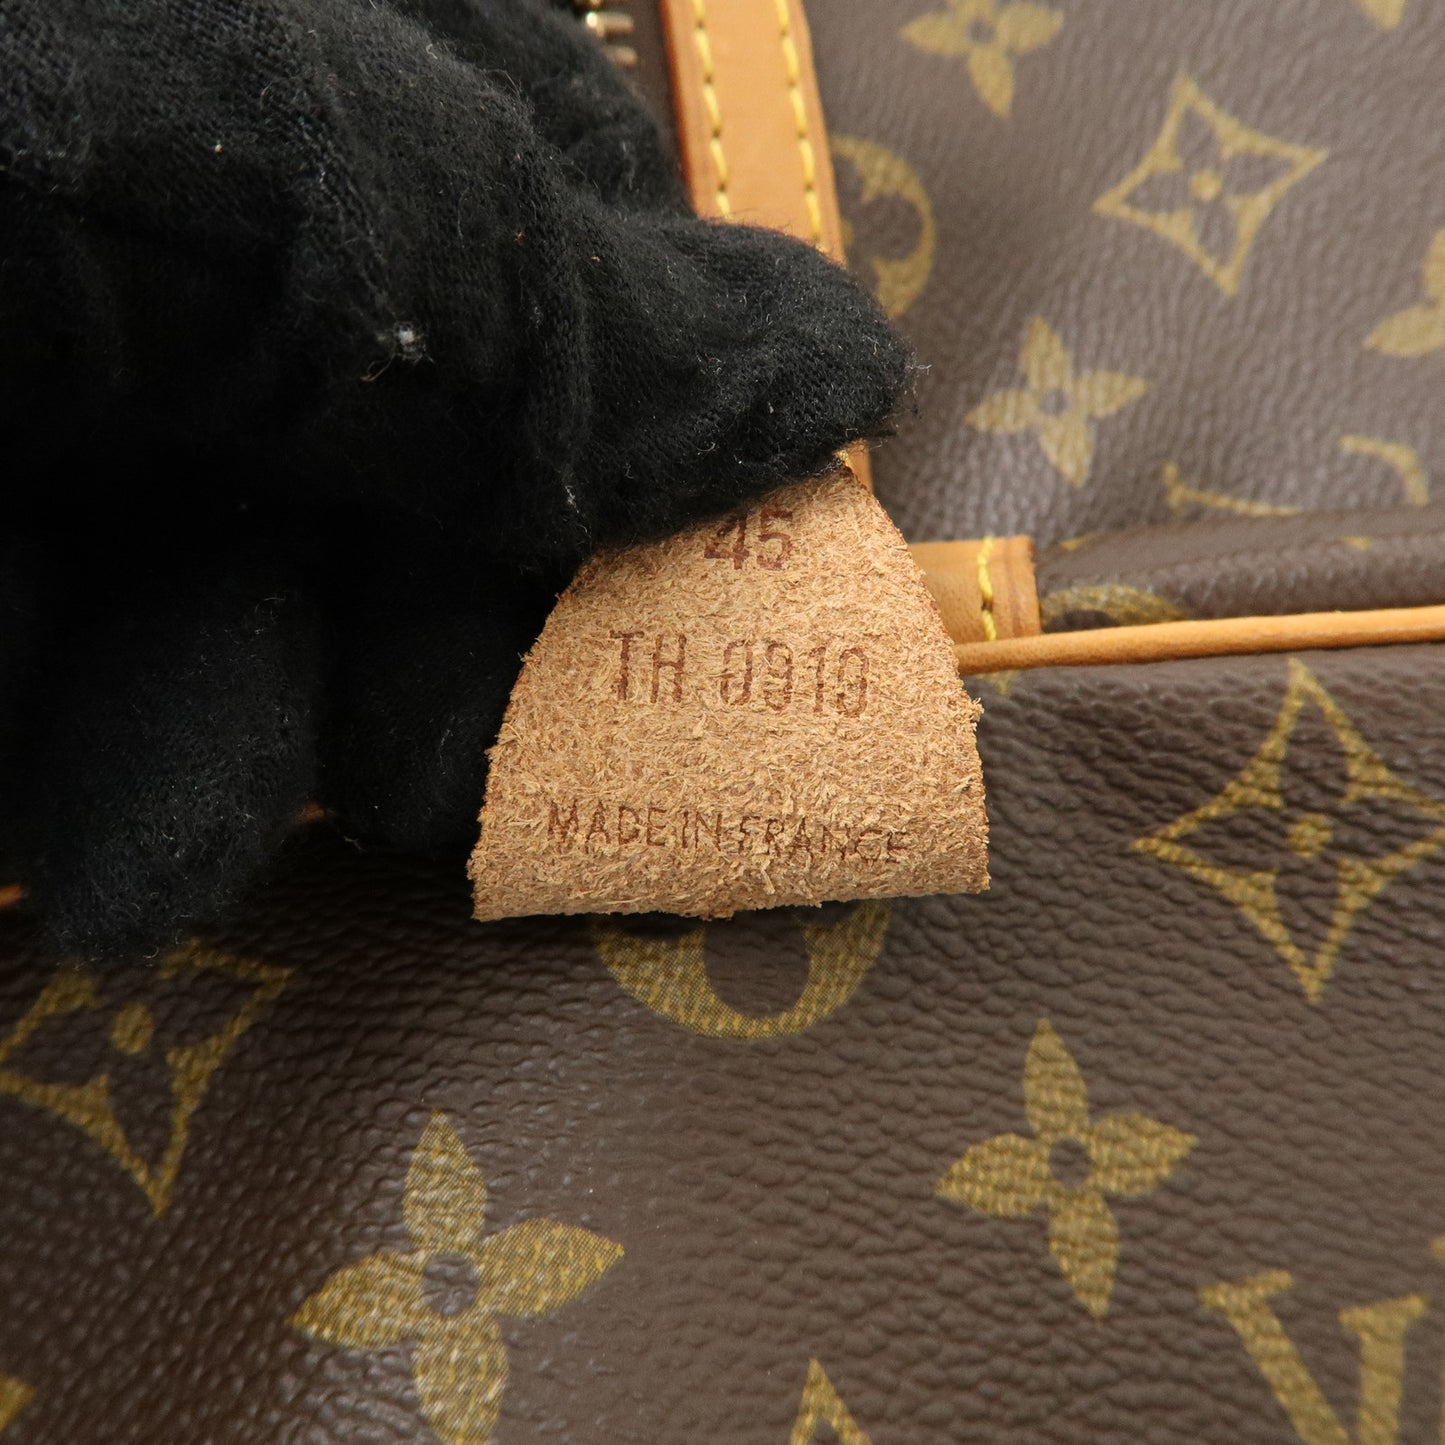 Louis Vuitton Monogram Sac Souple 45 Boston Bag Brown M41624